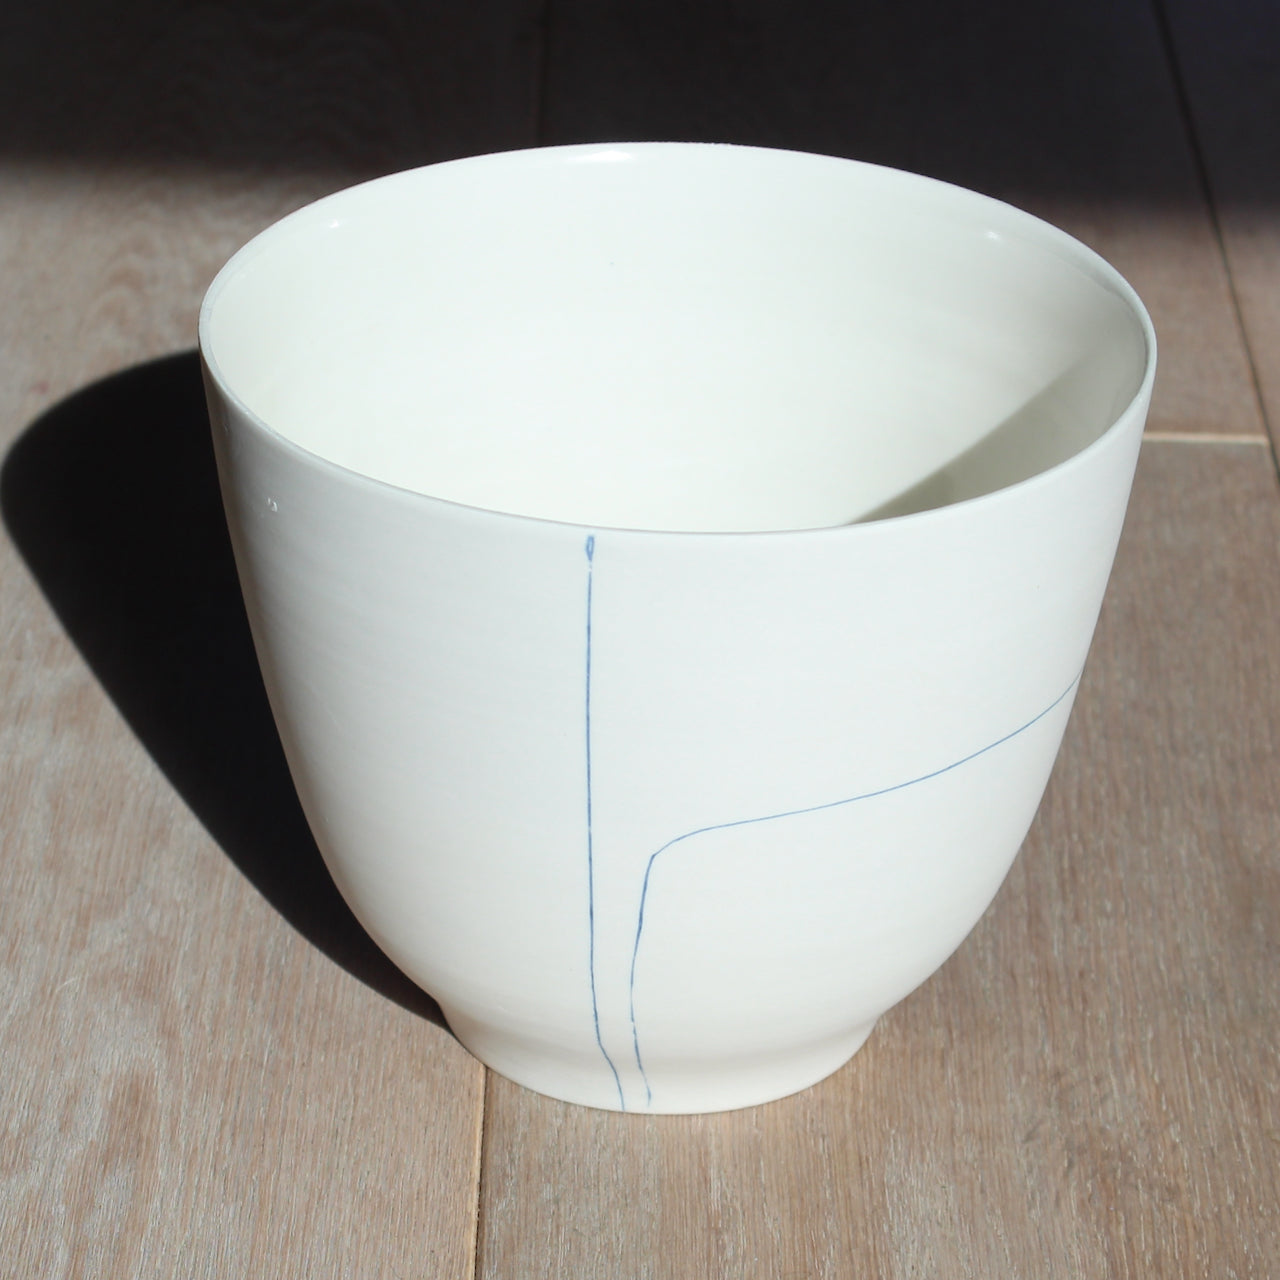 Uk potter liz o'dwyer porcelain bowl with blue line details.